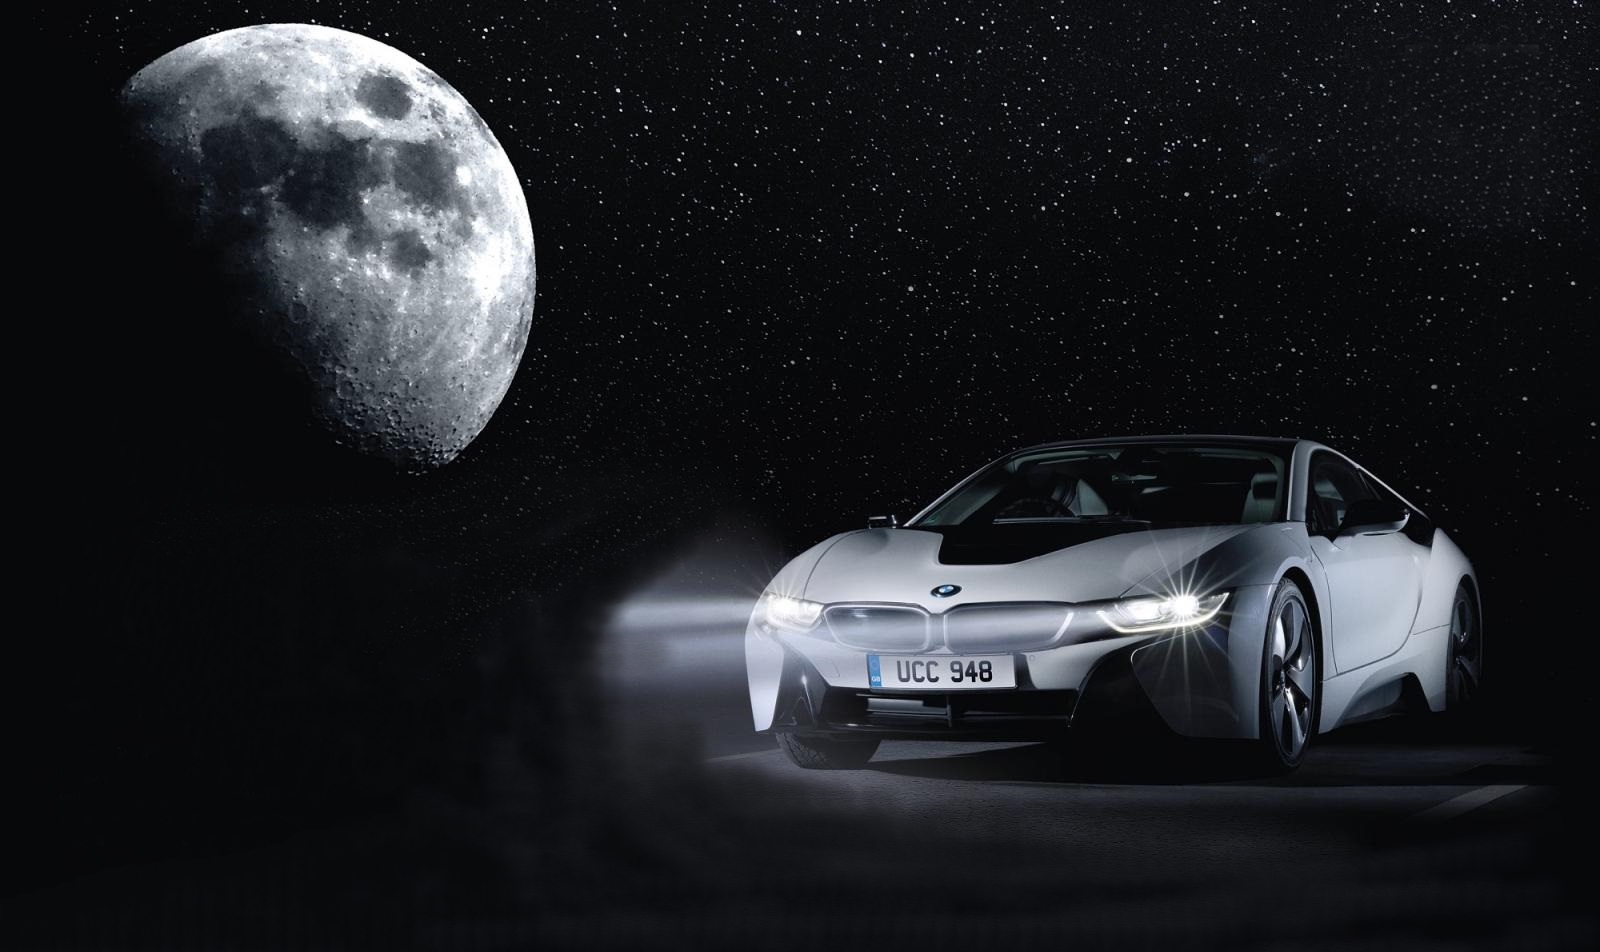 Polnjenje avtomobila na luno – BMW prvoaprilska šala, ki je…